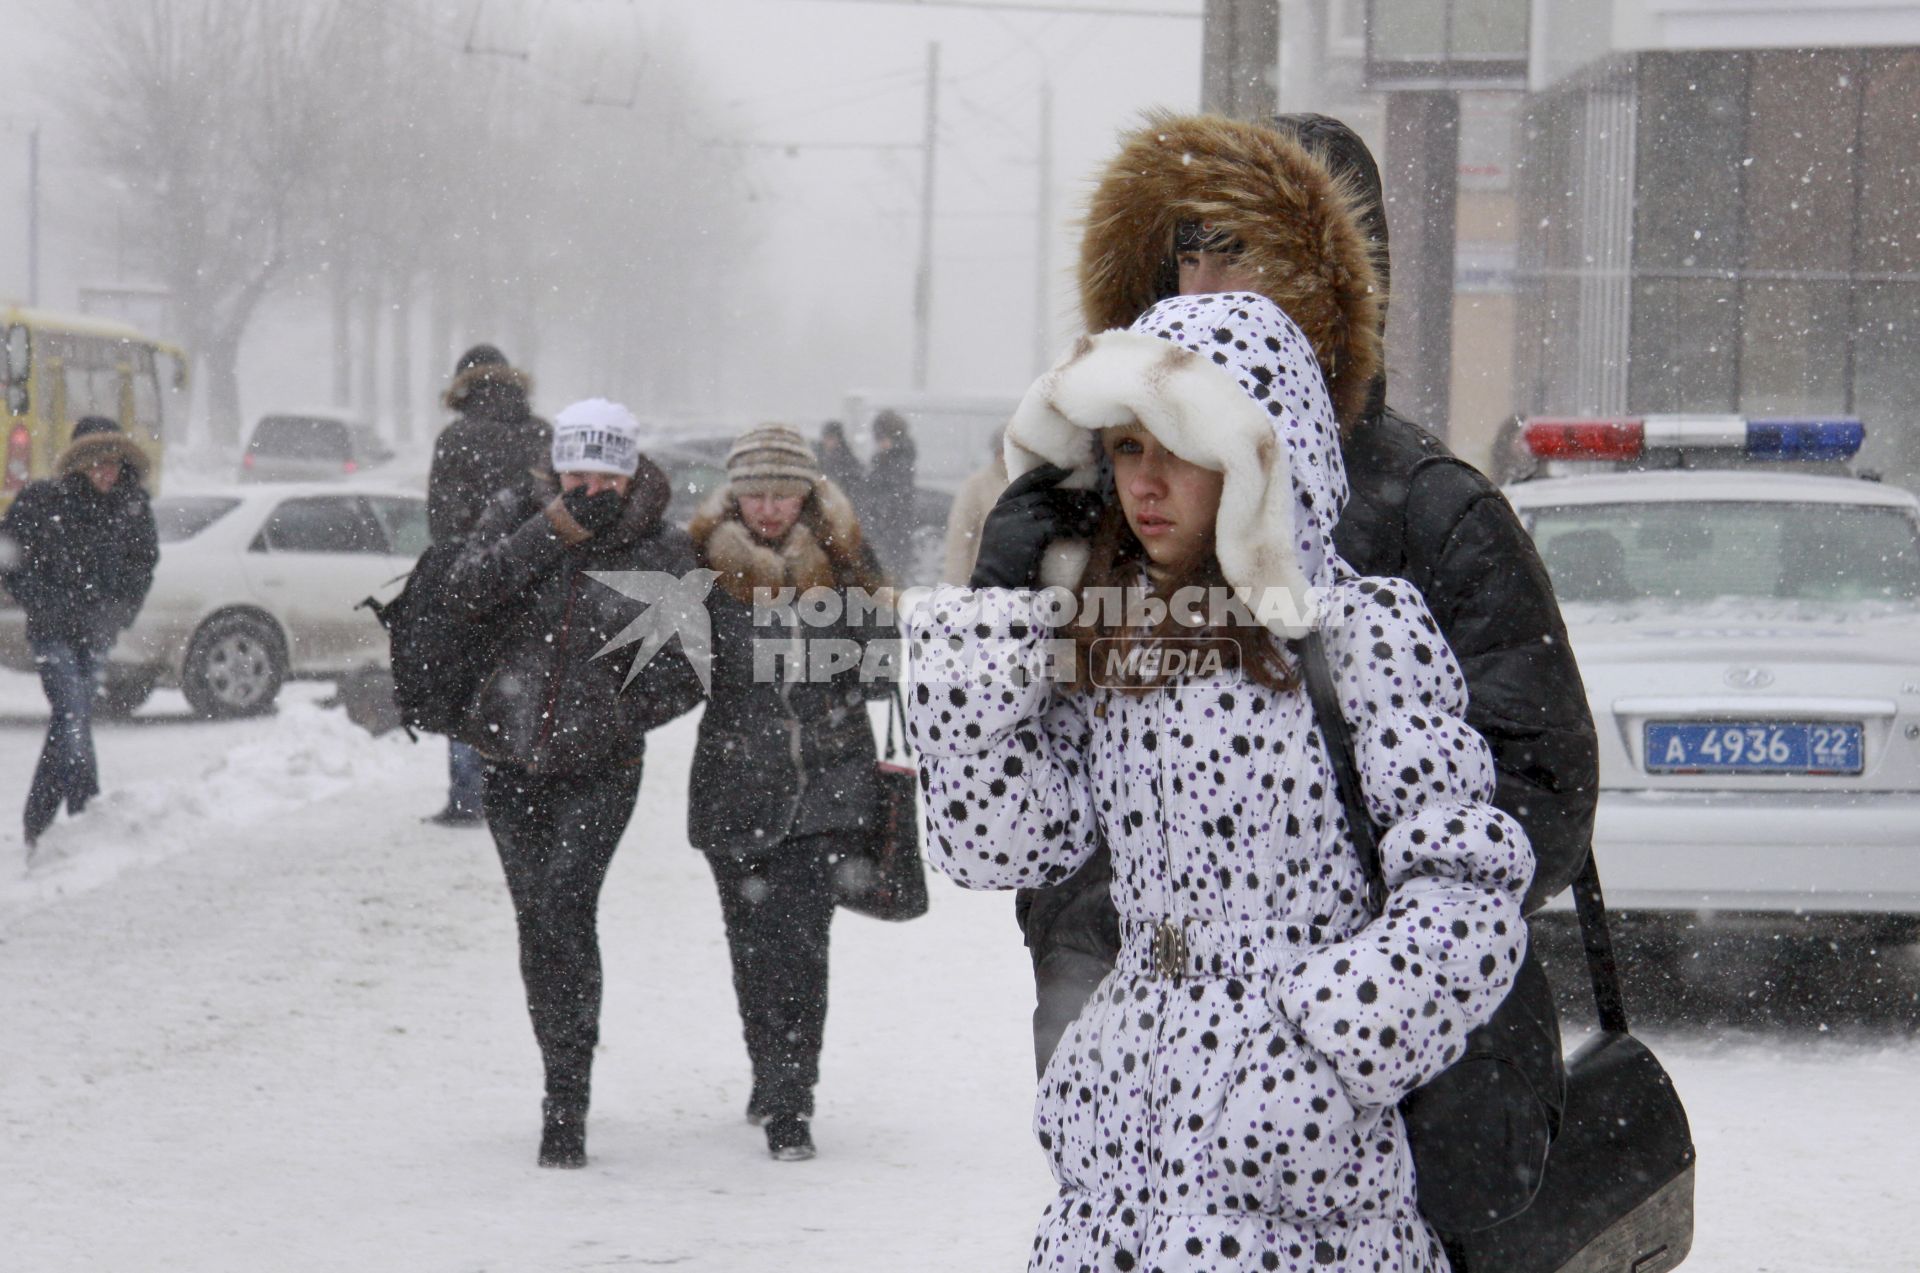 Зимняя непогода на улицах Барнаула. Люди прикрывают лица от сильного ветра со снегом.